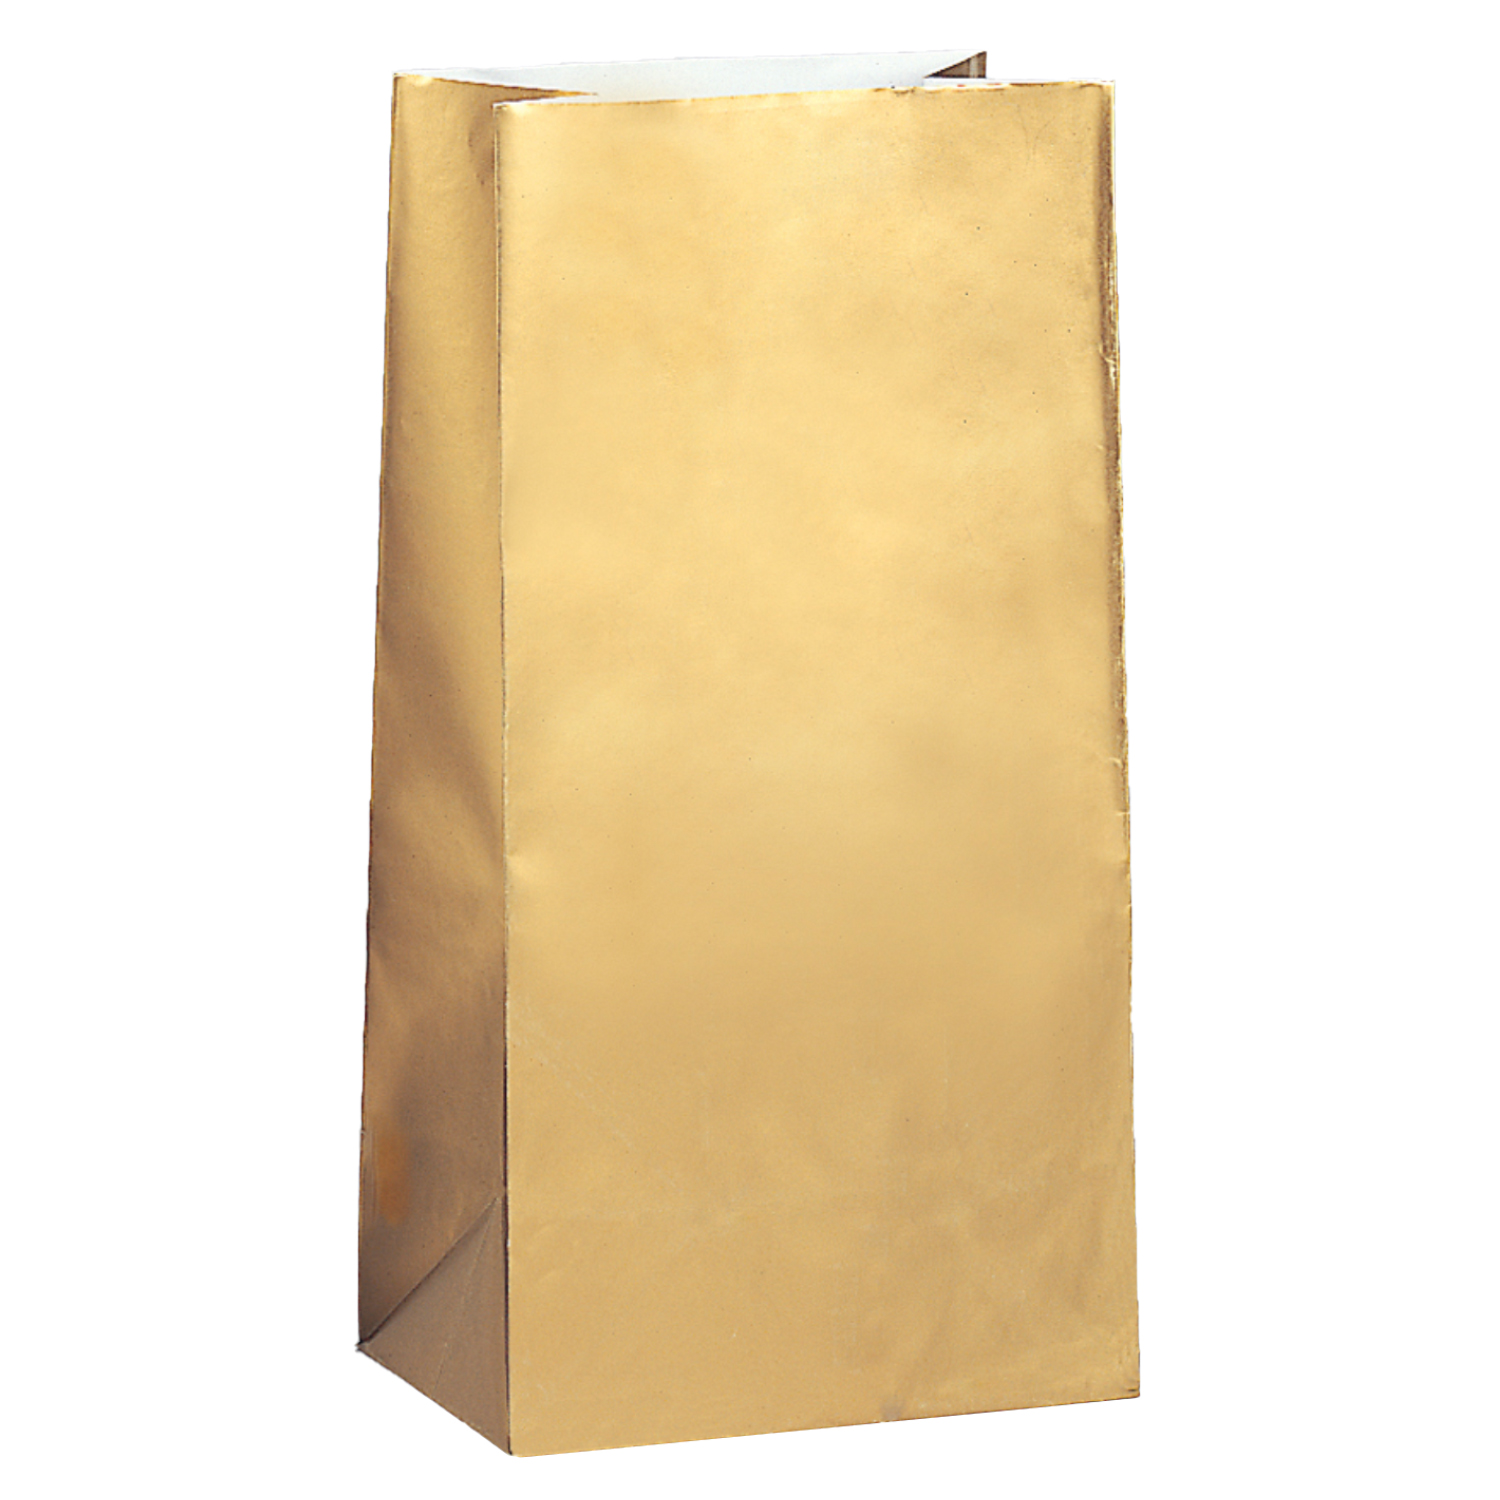 NEU Geschenktüten aus Papier, gold glänzend, 25x12x8 cm, 10 Stück